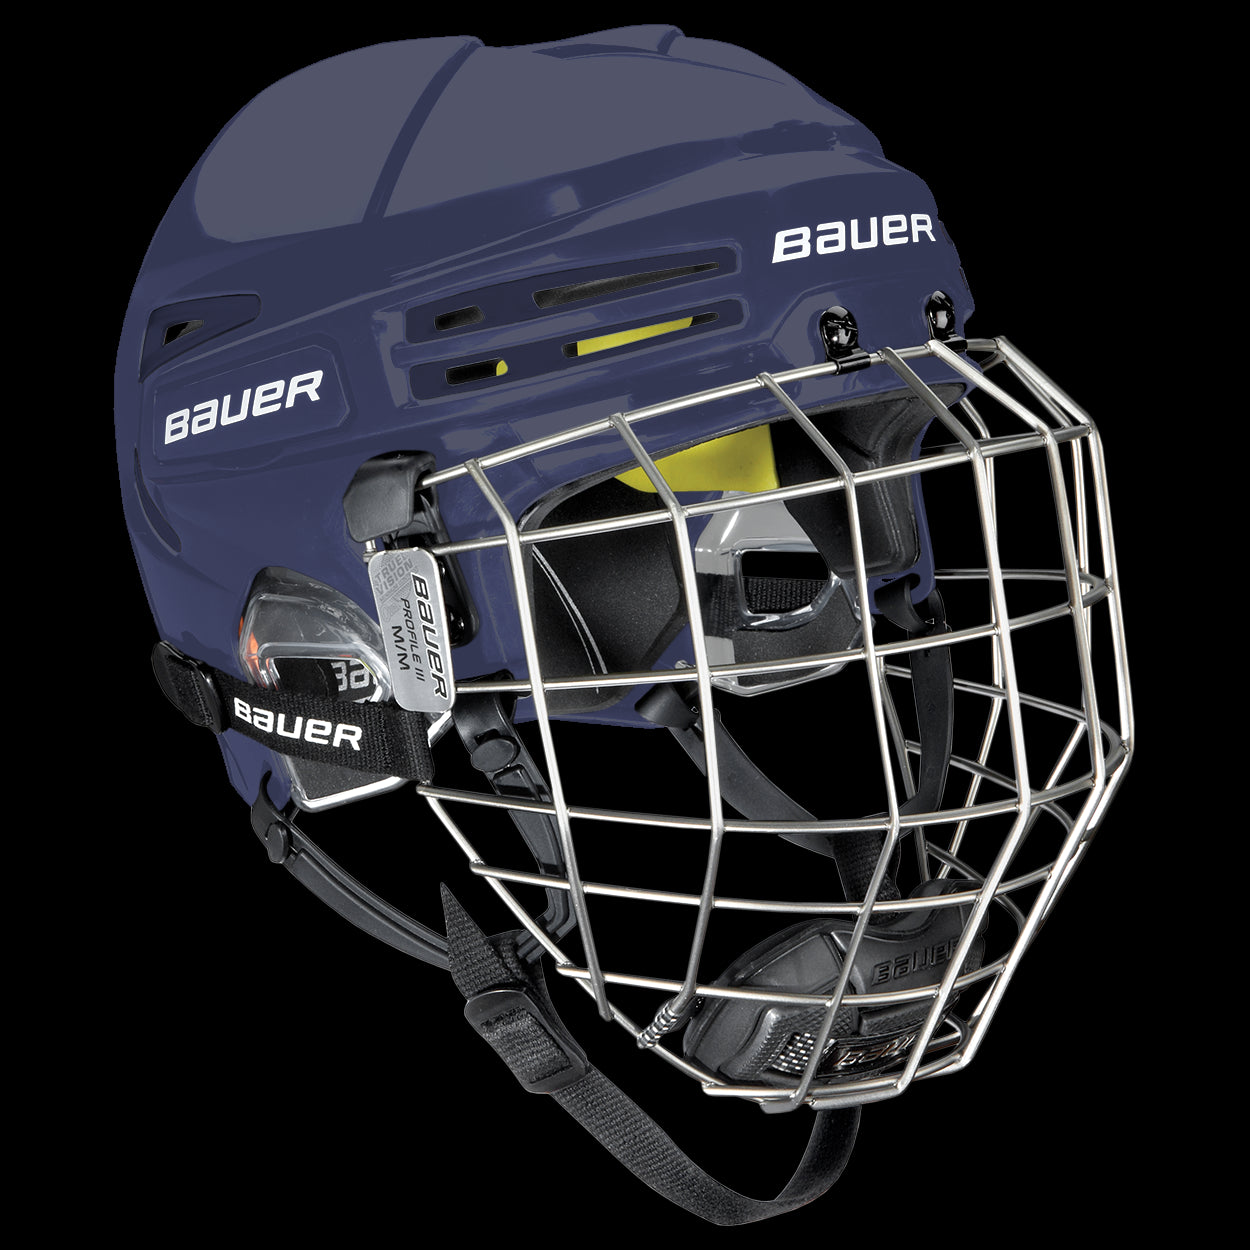 Bauer Reakt 85 helmet with grille